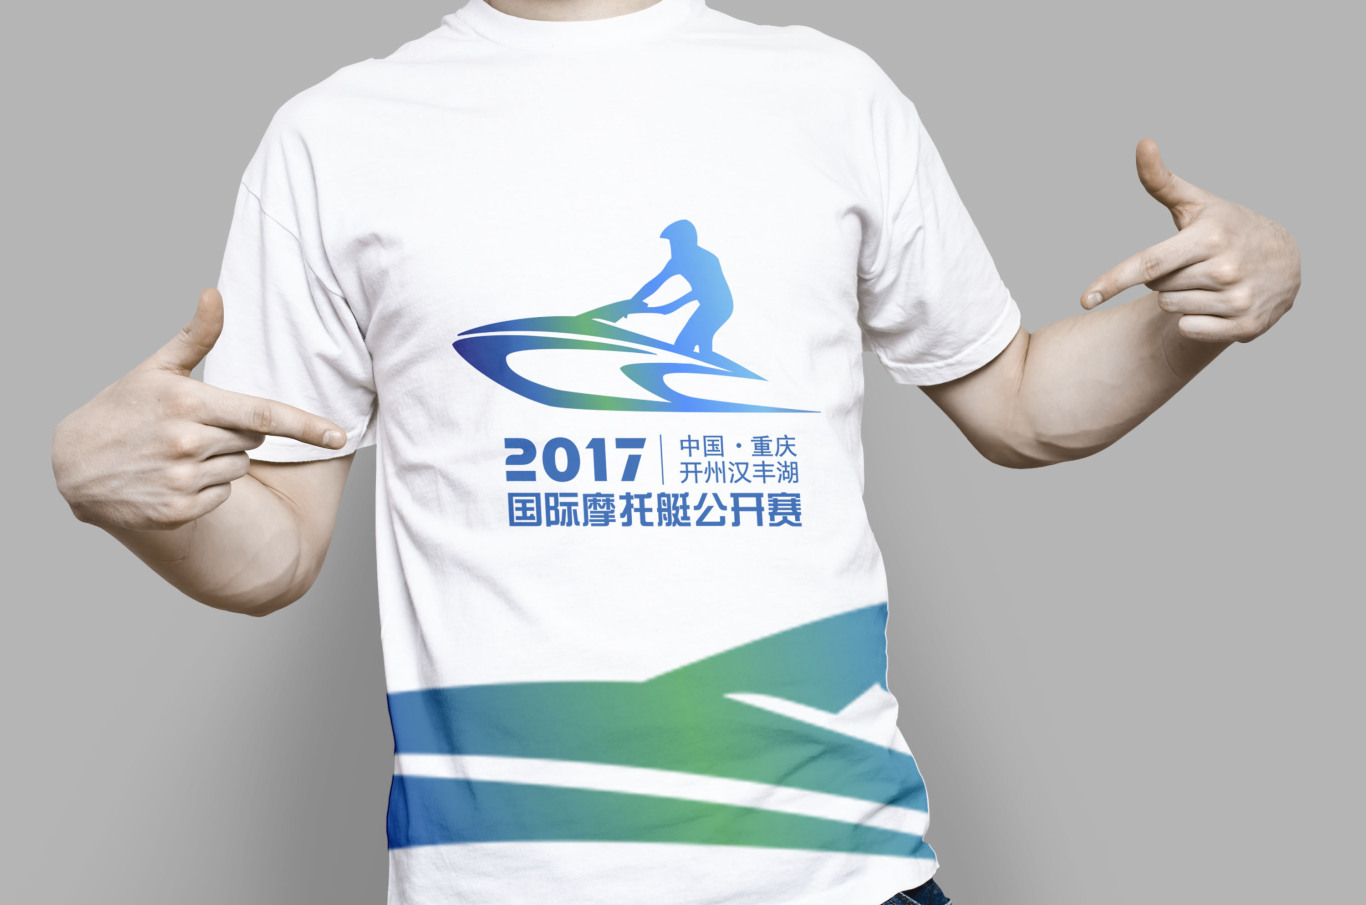 国际摩托艇公开赛logo设计图0